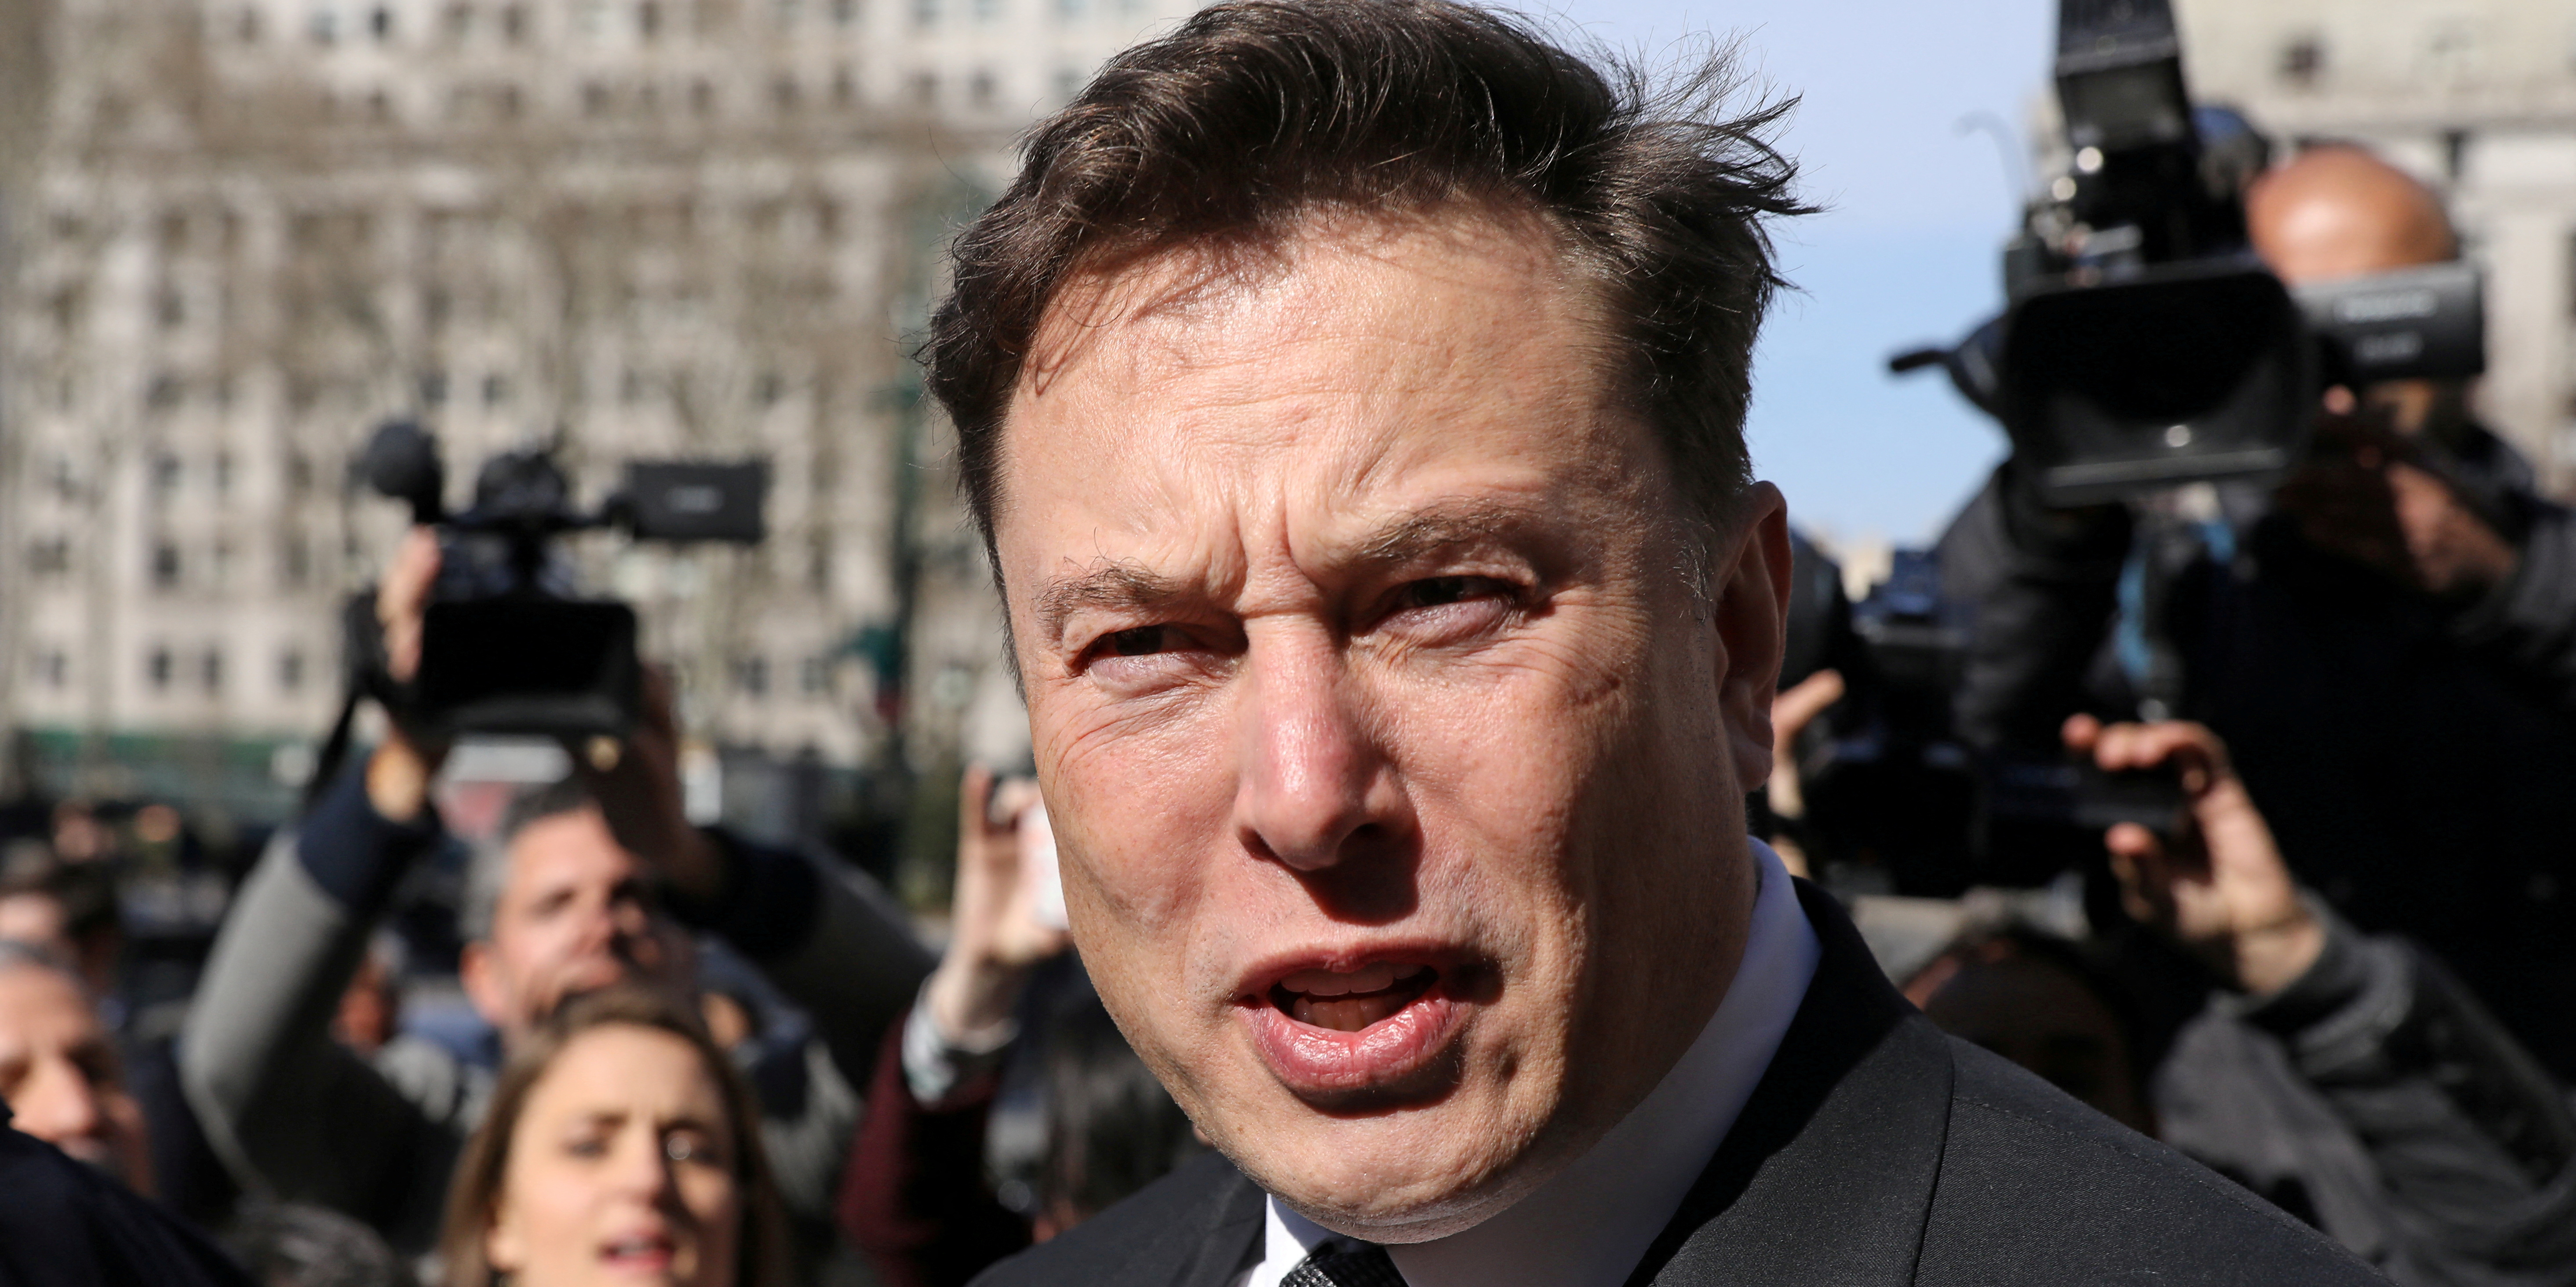 Rachat de Twitter : Elon Musk utilise les accusations d'un lanceur d'alerte pour justifier son abandon